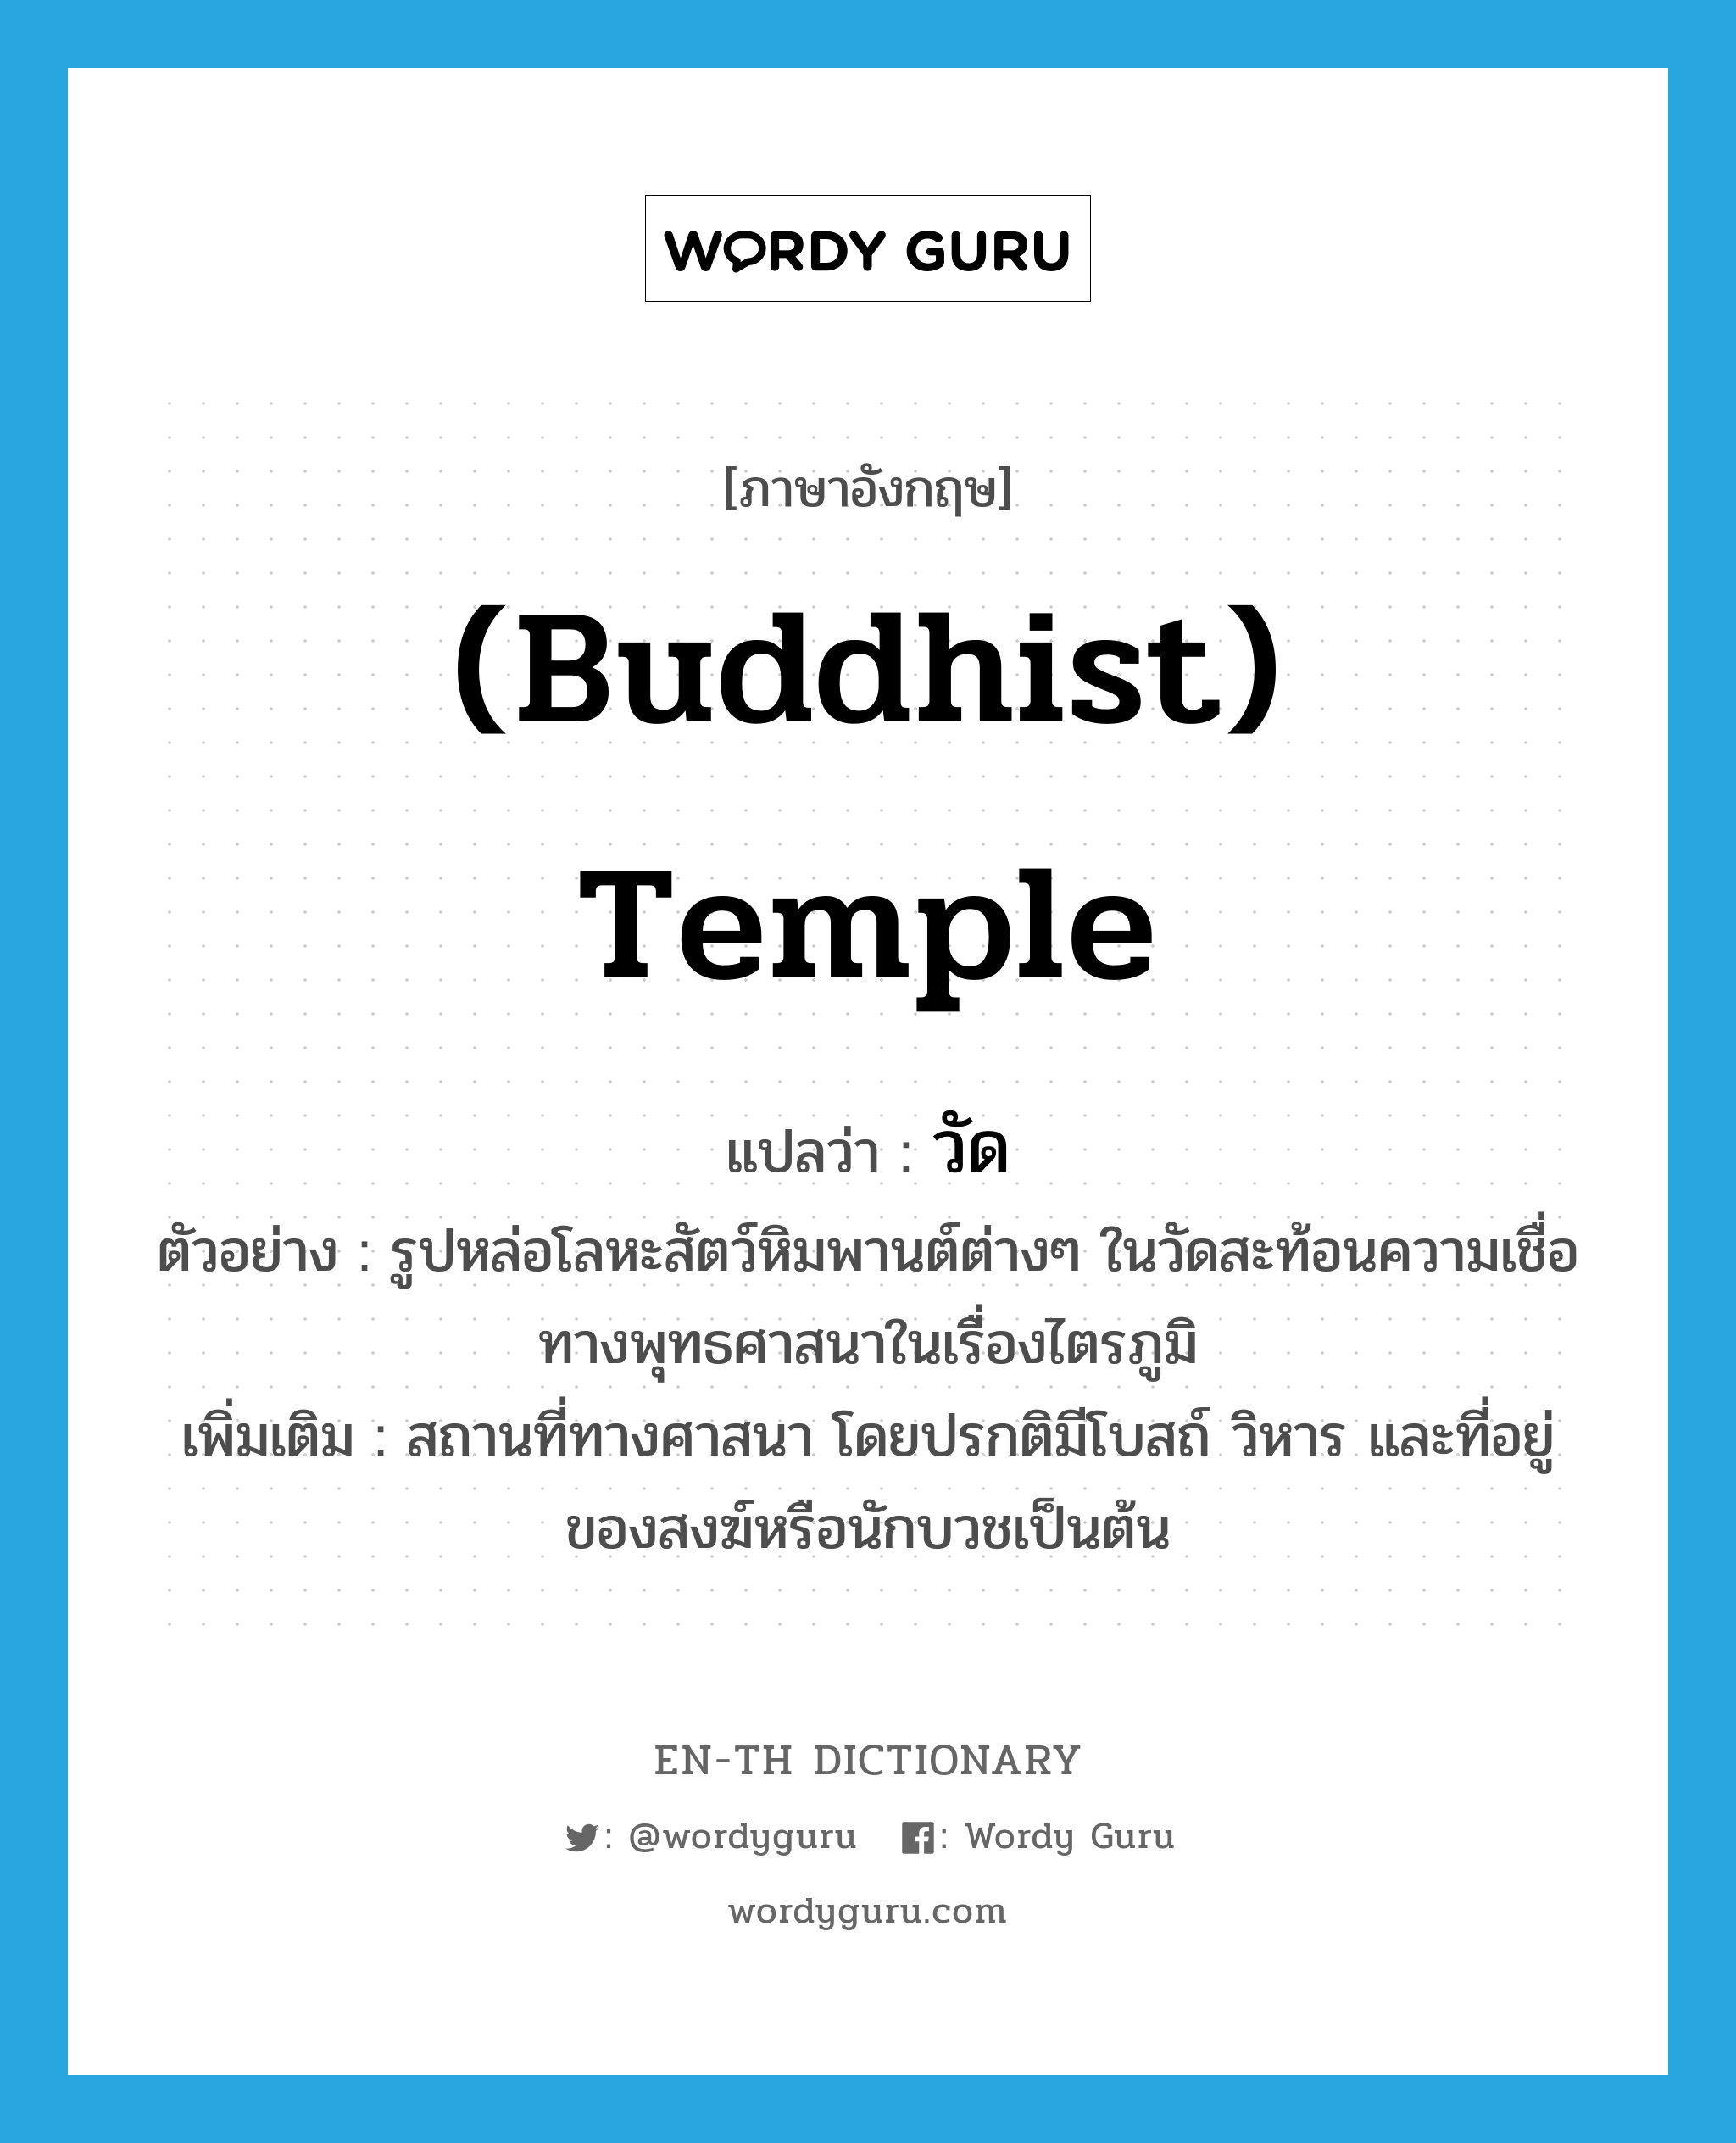 Buddhist temple แปลว่า?, คำศัพท์ภาษาอังกฤษ (Buddhist) temple แปลว่า วัด ประเภท N ตัวอย่าง รูปหล่อโลหะสัตว์หิมพานต์ต่างๆ ในวัดสะท้อนความเชื่อทางพุทธศาสนาในเรื่องไตรภูมิ เพิ่มเติม สถานที่ทางศาสนา โดยปรกติมีโบสถ์ วิหาร และที่อยู่ของสงฆ์หรือนักบวชเป็นต้น หมวด N